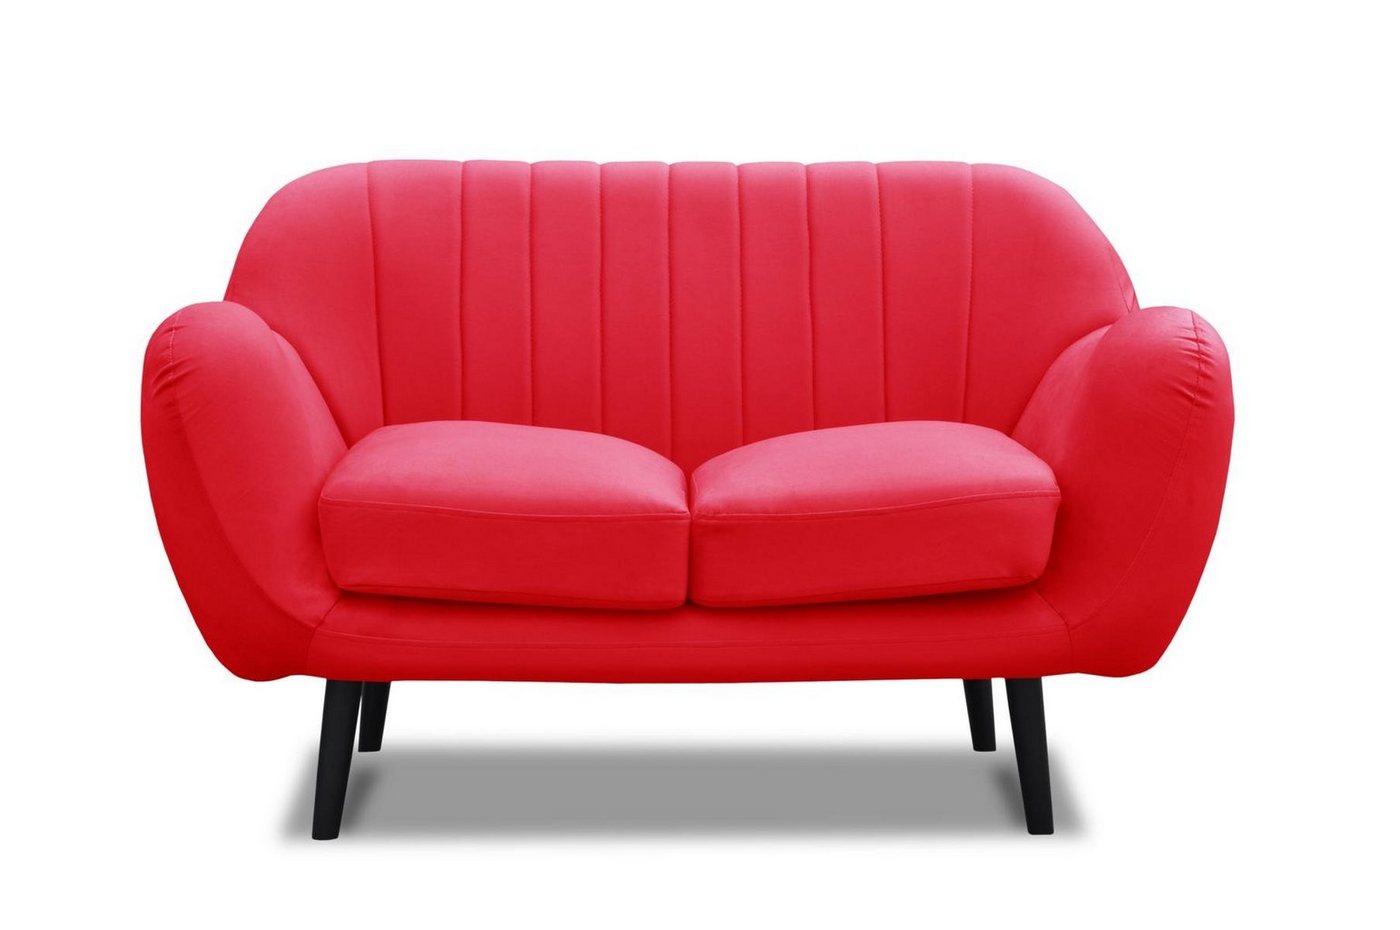 JVmoebel Sofa Moderne Zweisitzer Stoff Leder Zweisitzer Neu Couch, Made in Europe von JVmoebel